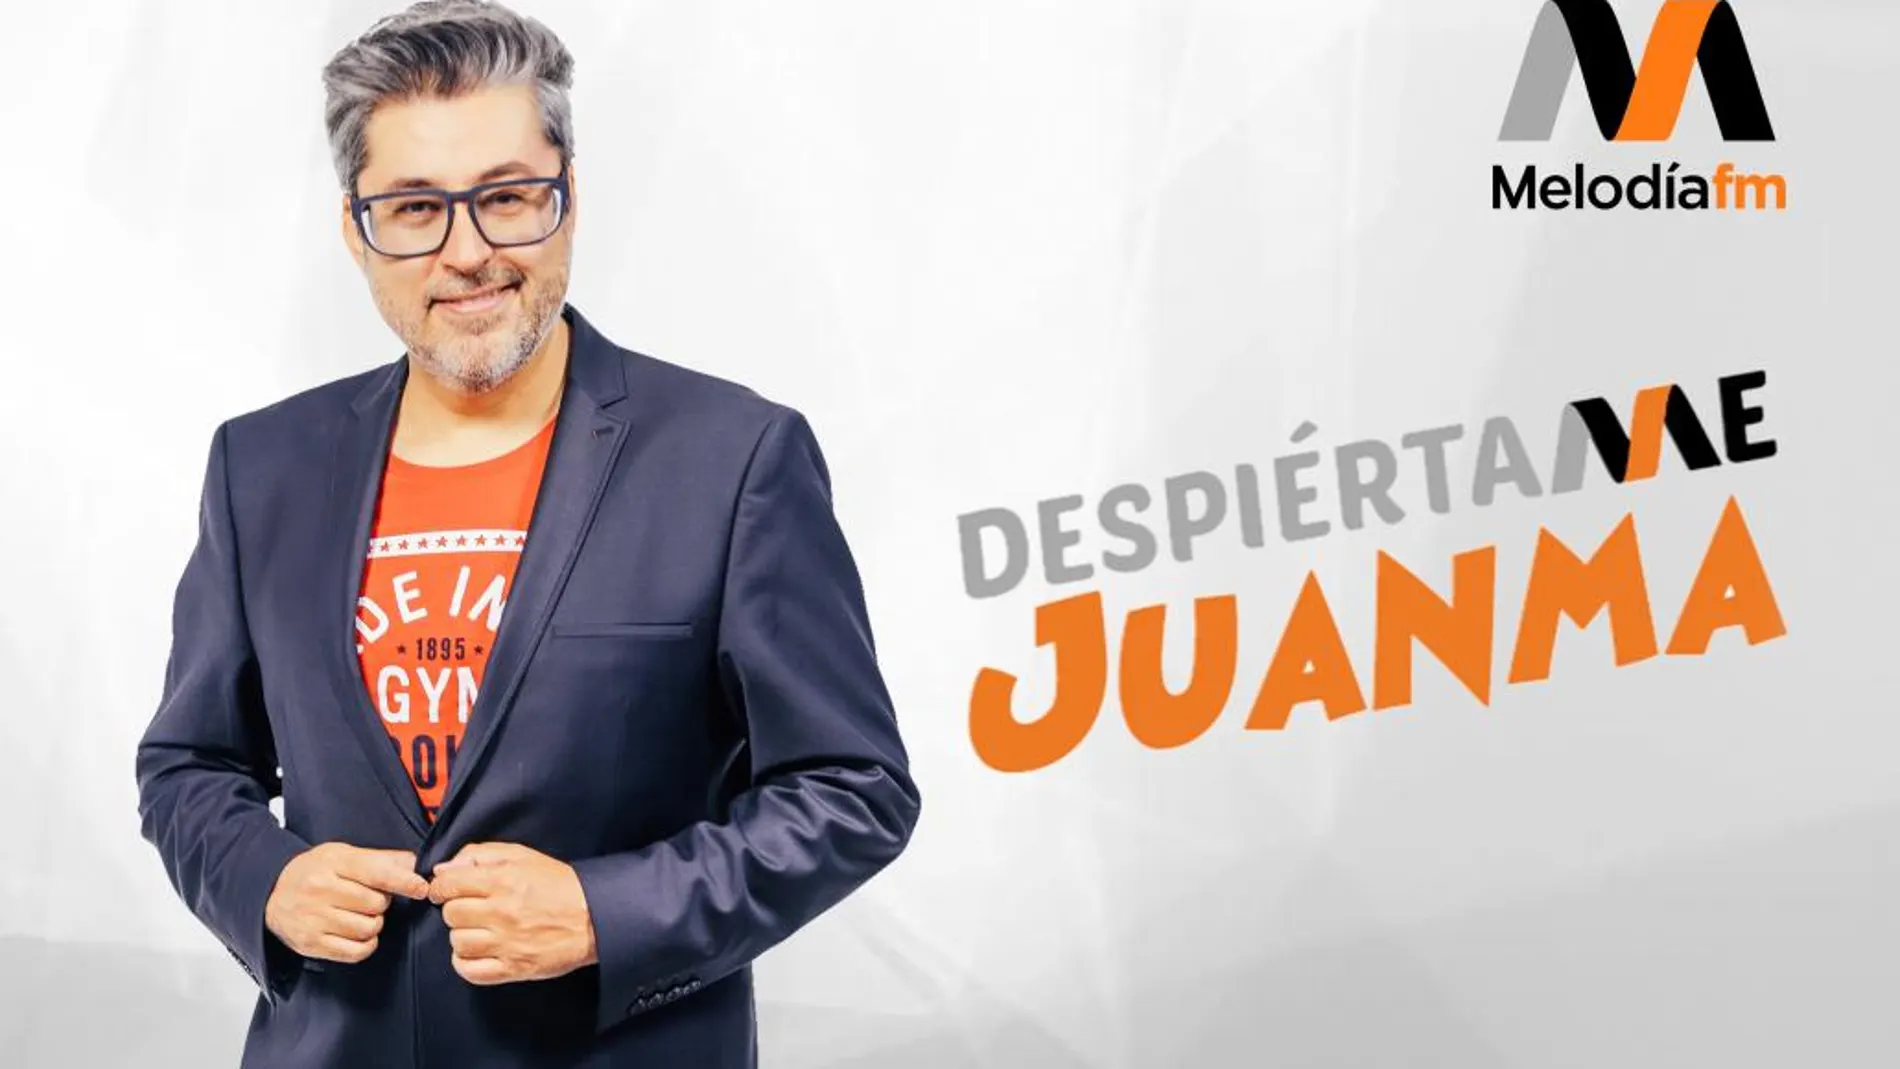 Juanma Ortega aterriza en Melodía FM con el morning show ‘¡Despiértame, Juanma!’